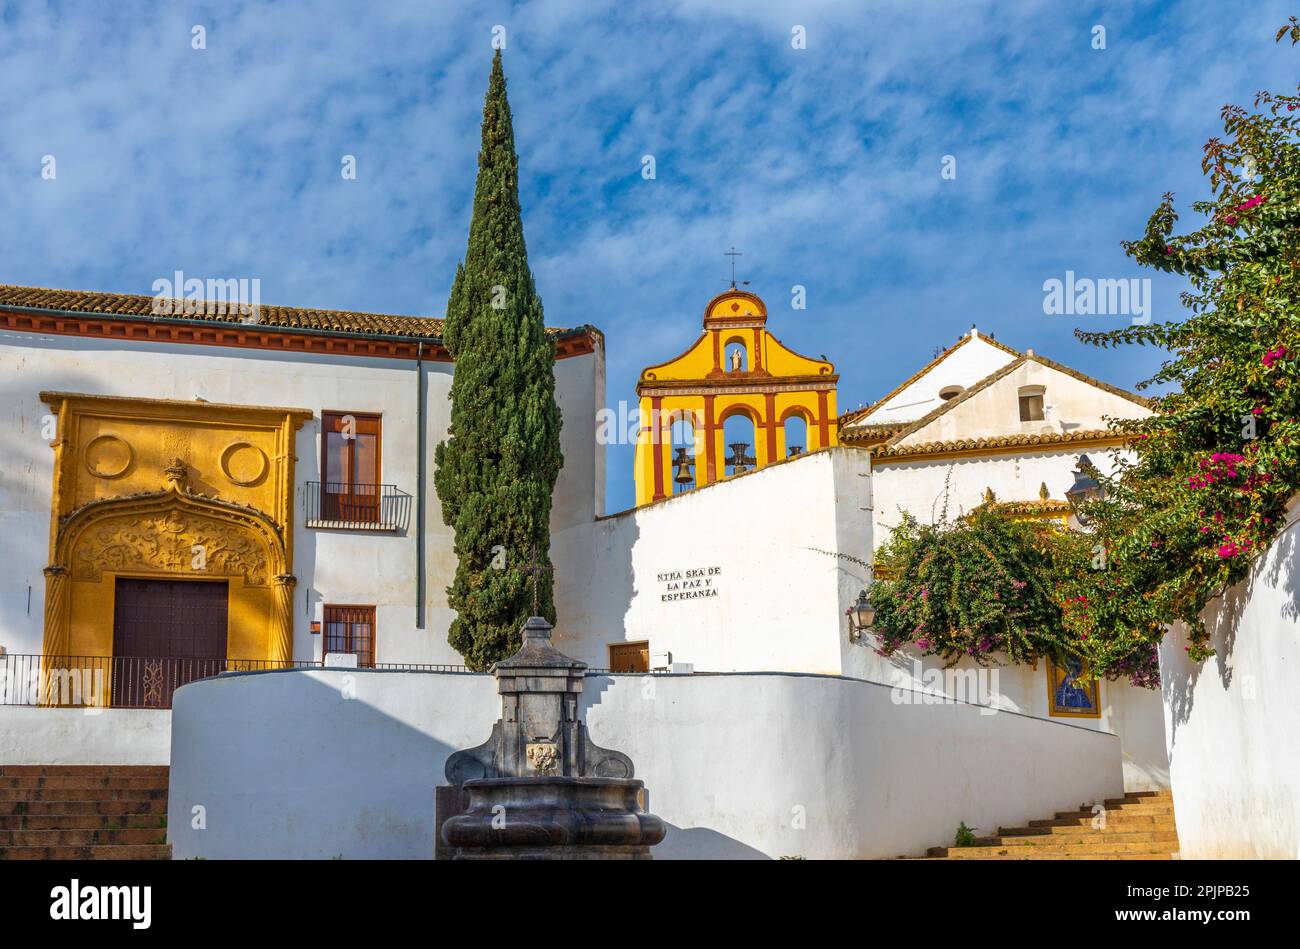 Plaza Nuestra Señora de la Paz y Esperanza, Cordoba, Andalusia, Spain, South West Europe Stock Photo